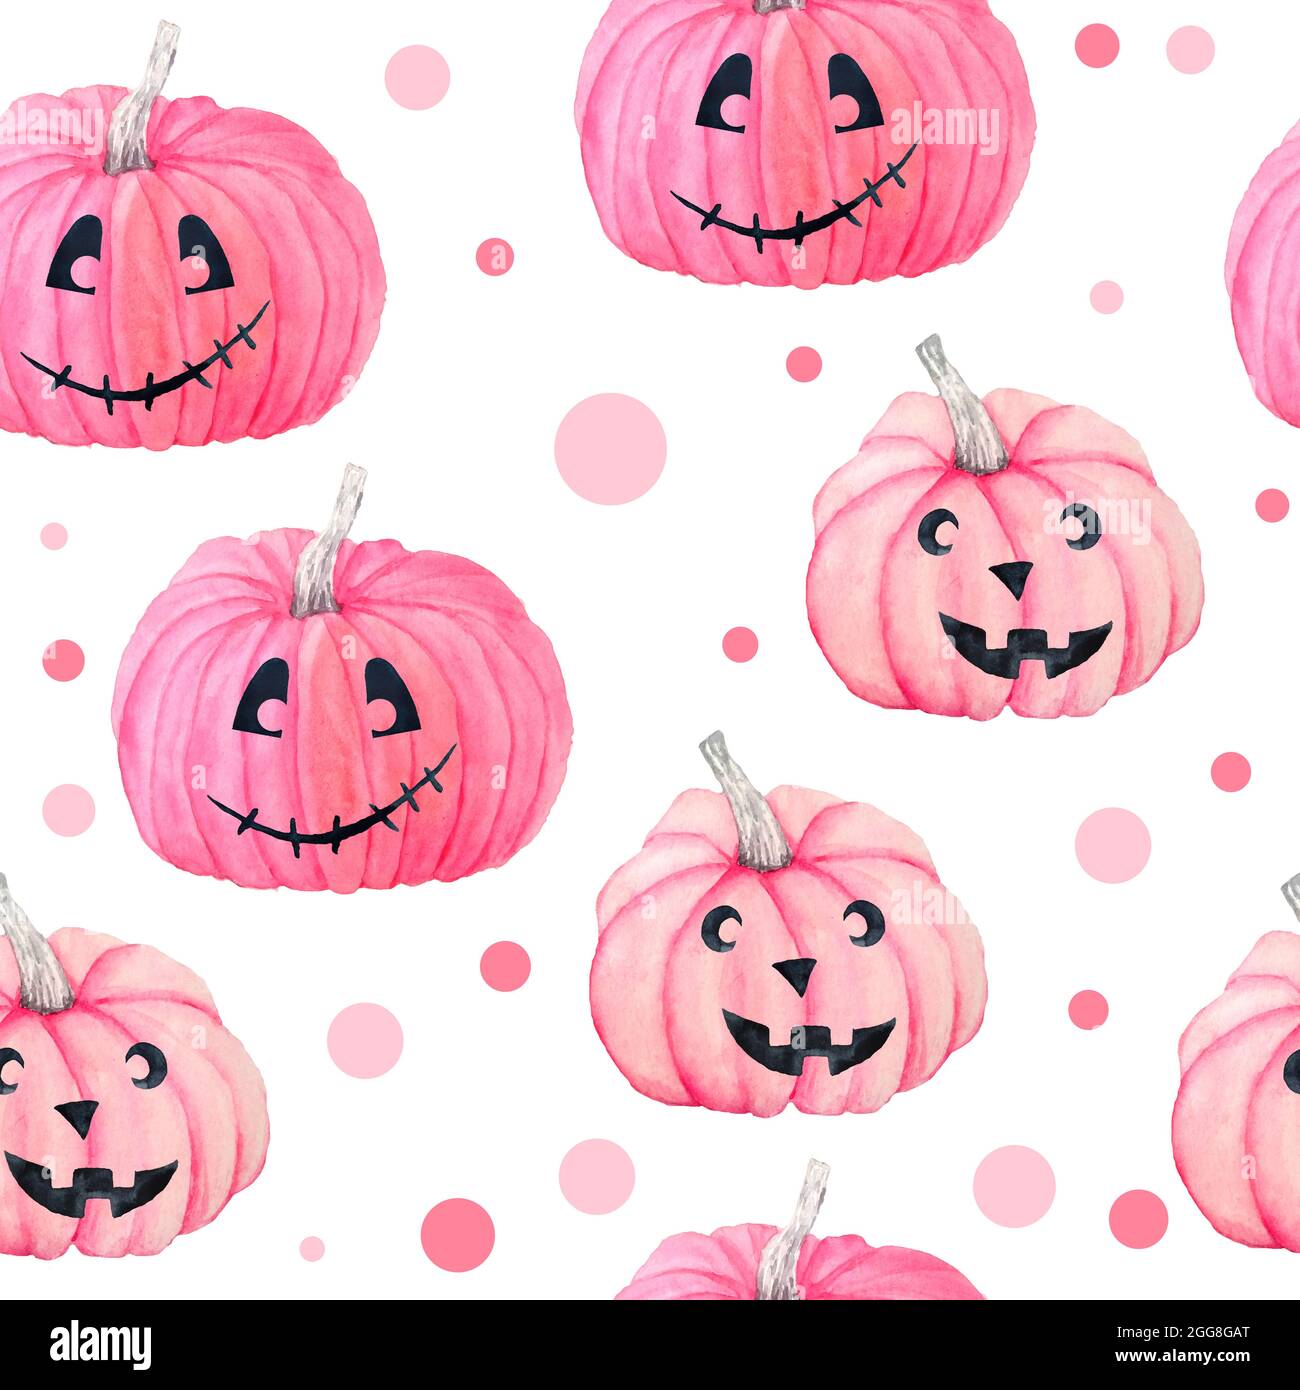 Download A Stunningly Bright Pink Pumpkin Wallpaper  Wallpaperscom